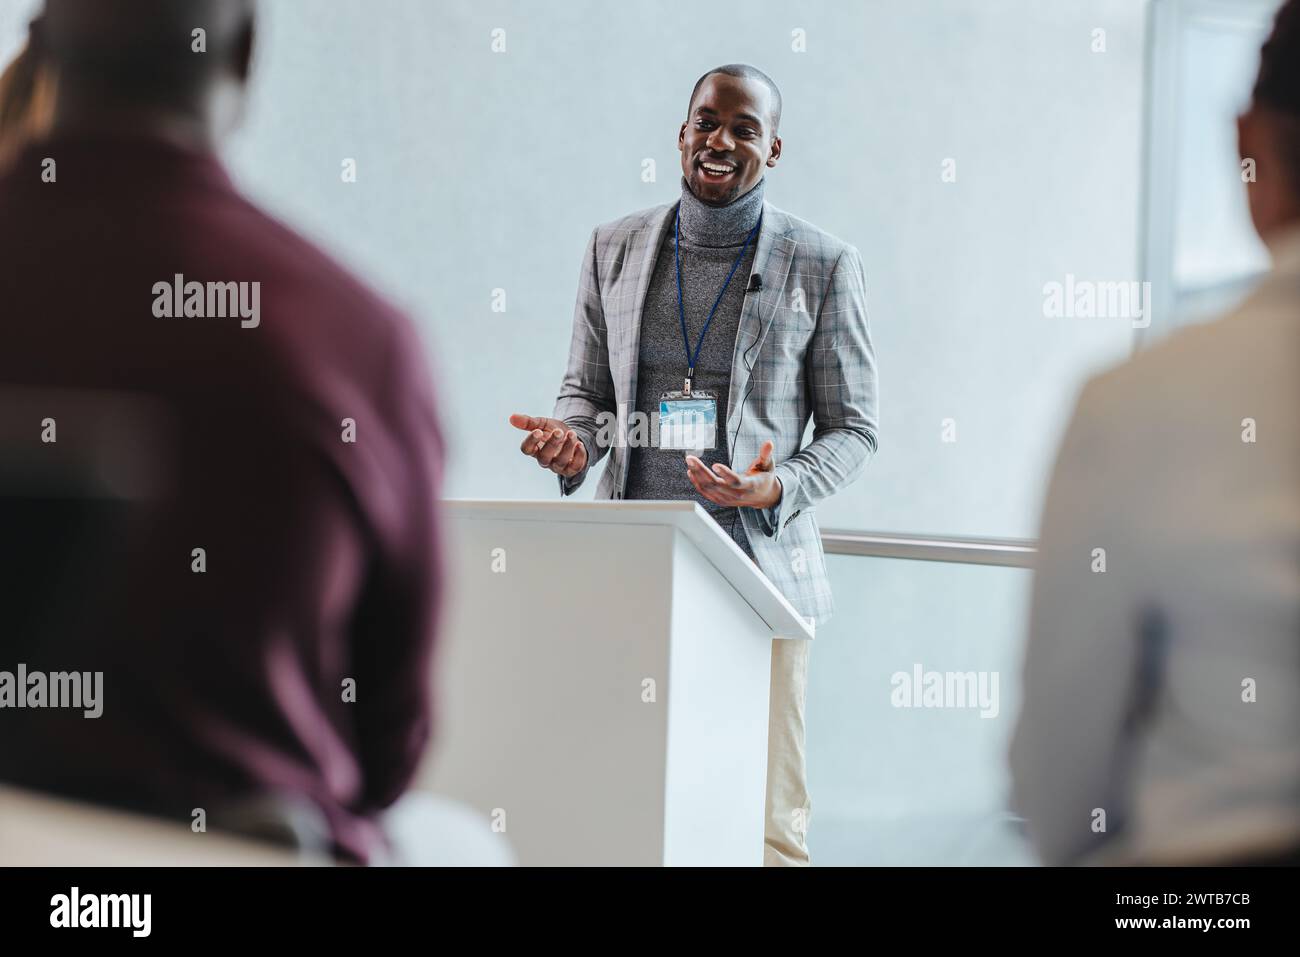 Ein professioneller männlicher Sprecher mit einem strahlenden Lächeln spricht ein Publikum bei einem Business Seminar an. Der Konferenzraum ist mit Tageslicht, Betonung, gefüllt Stockfoto